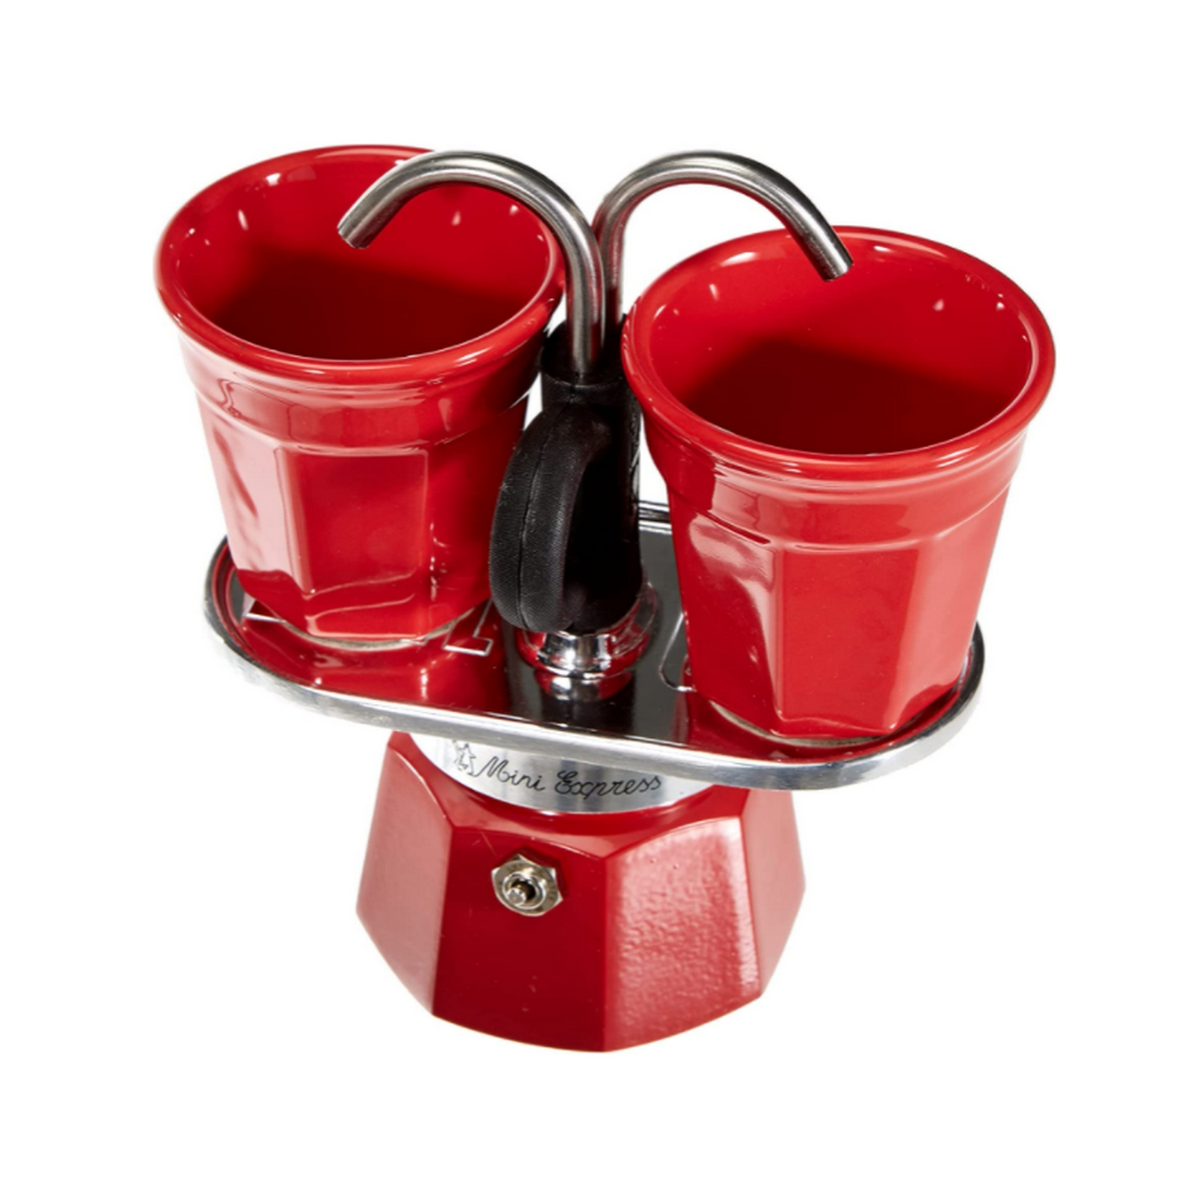 BIALETTI Set Mini R für Tassen 2TZ 2 Espressokocher RED Rot